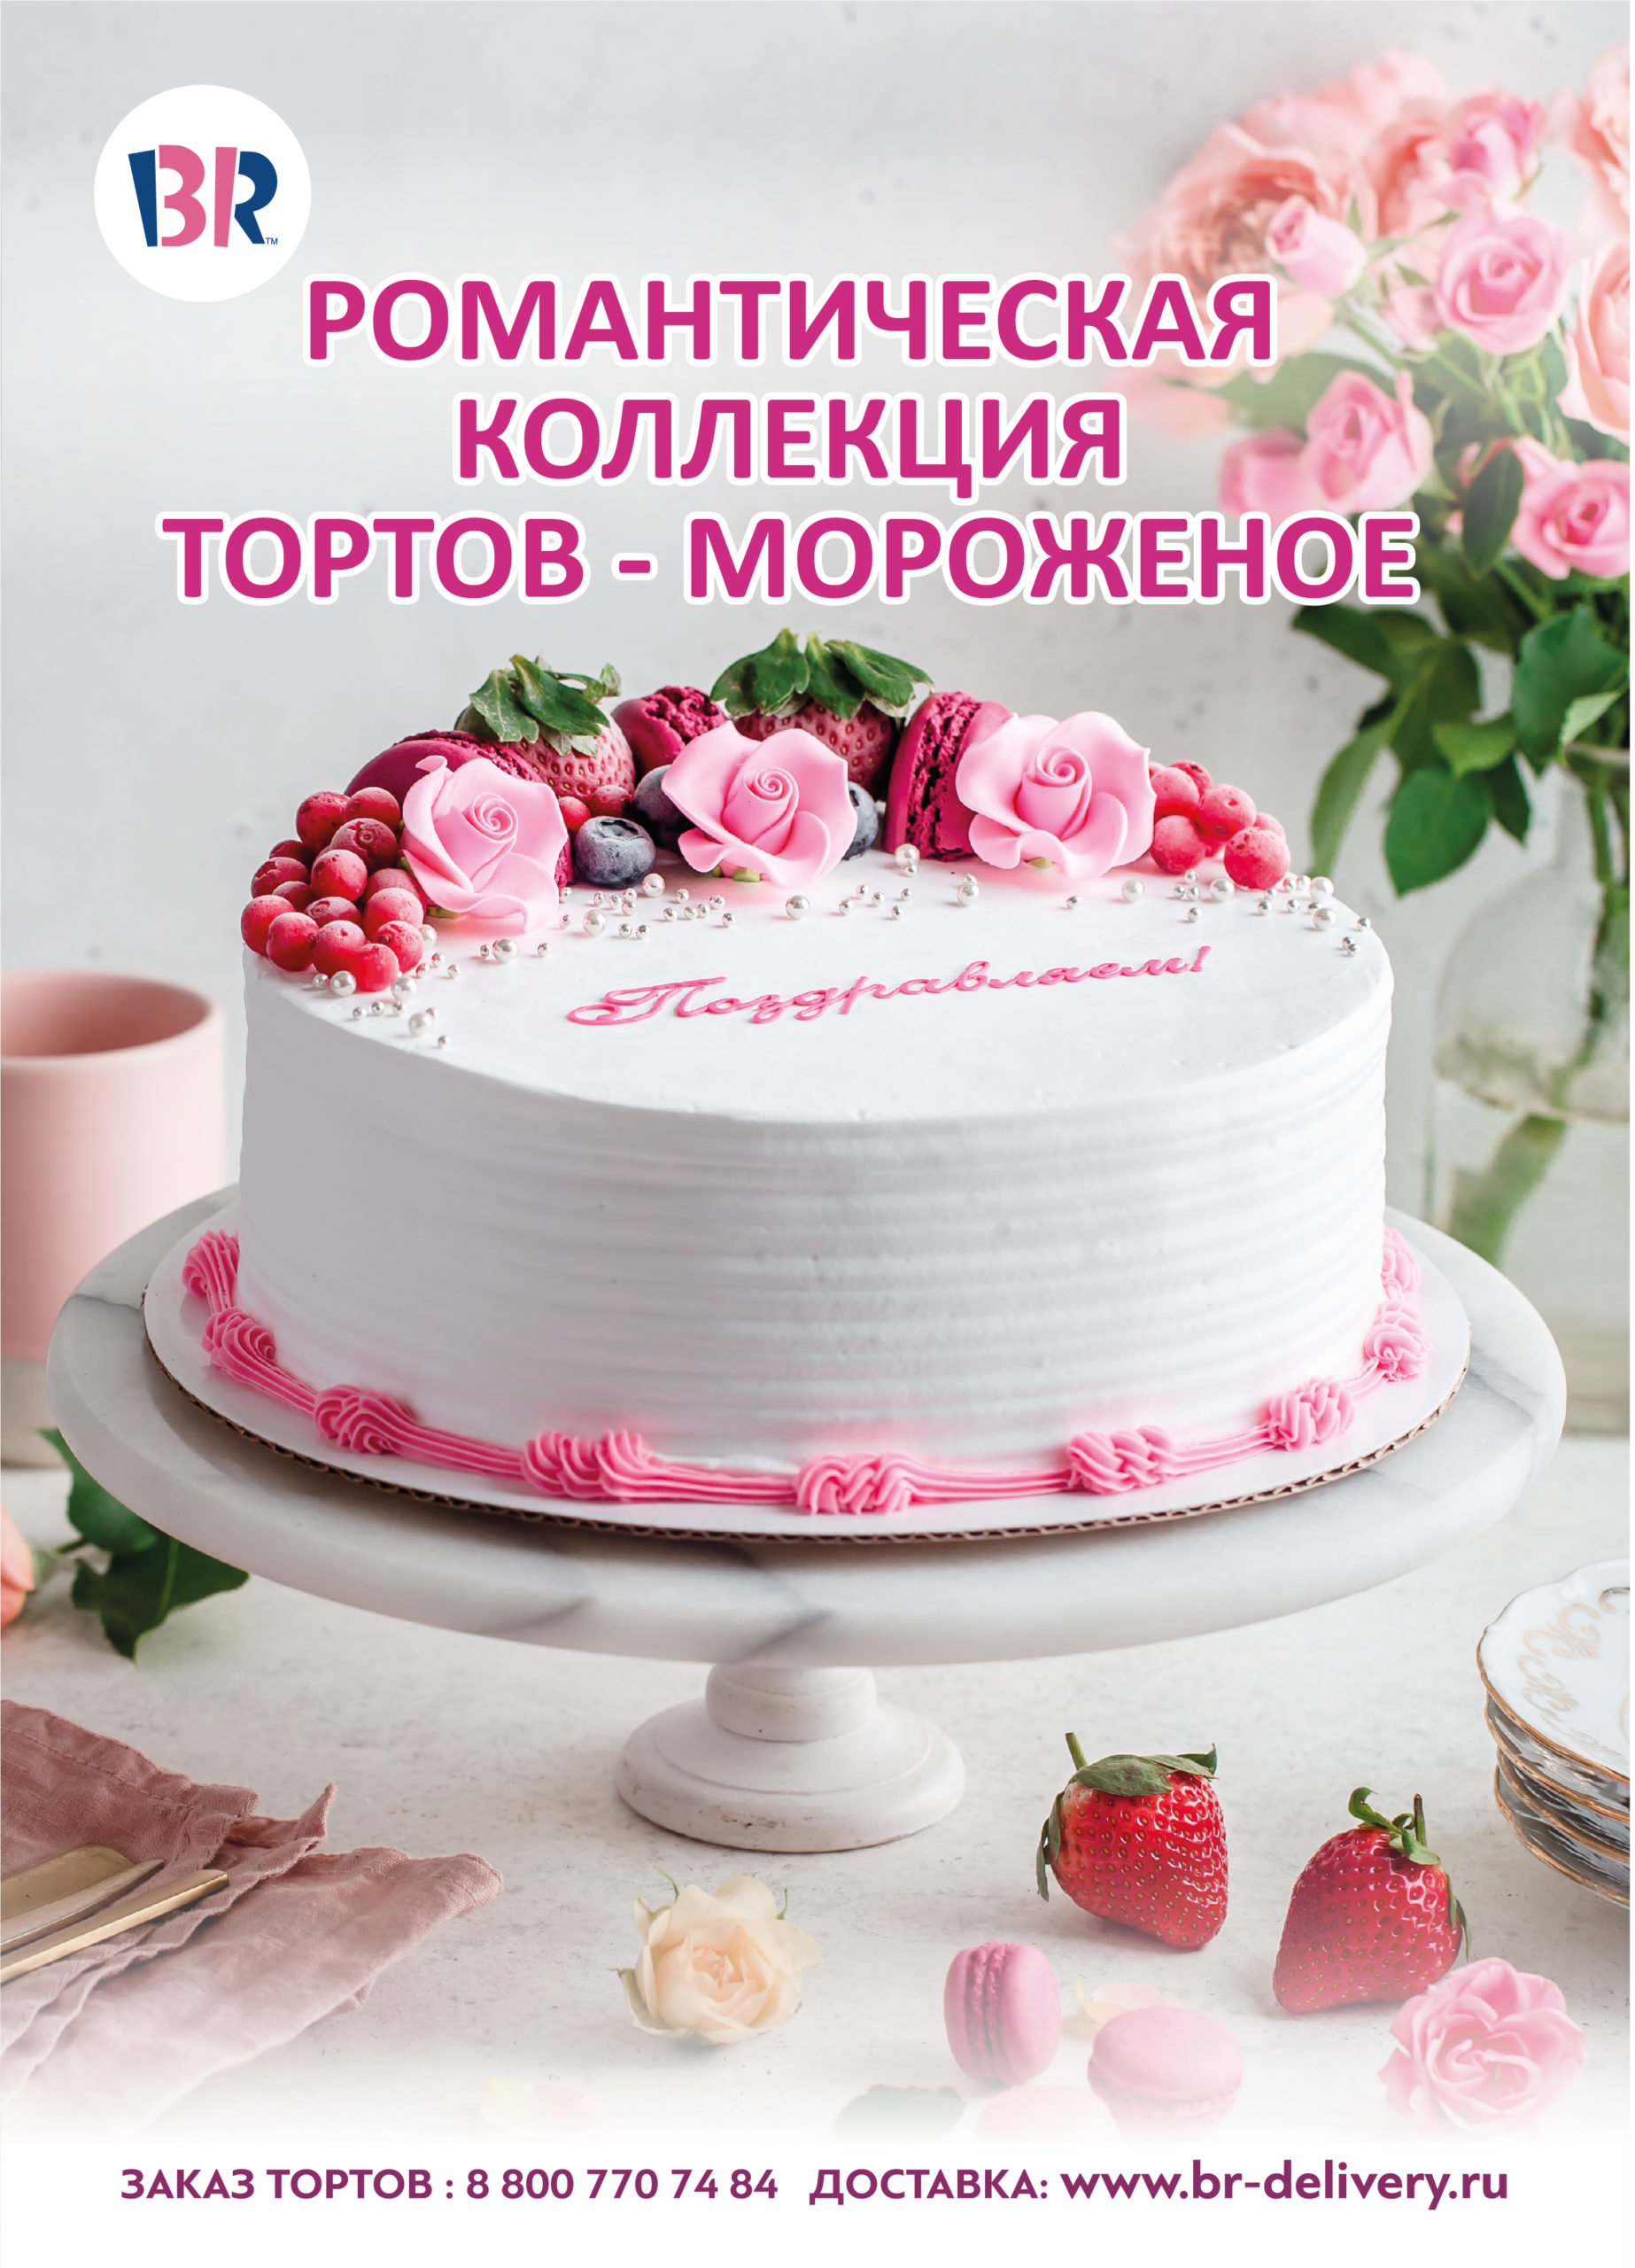 «Баскин Роббинс» выпустил новую романтическую коллекцию тортов-мороженое #Moskva